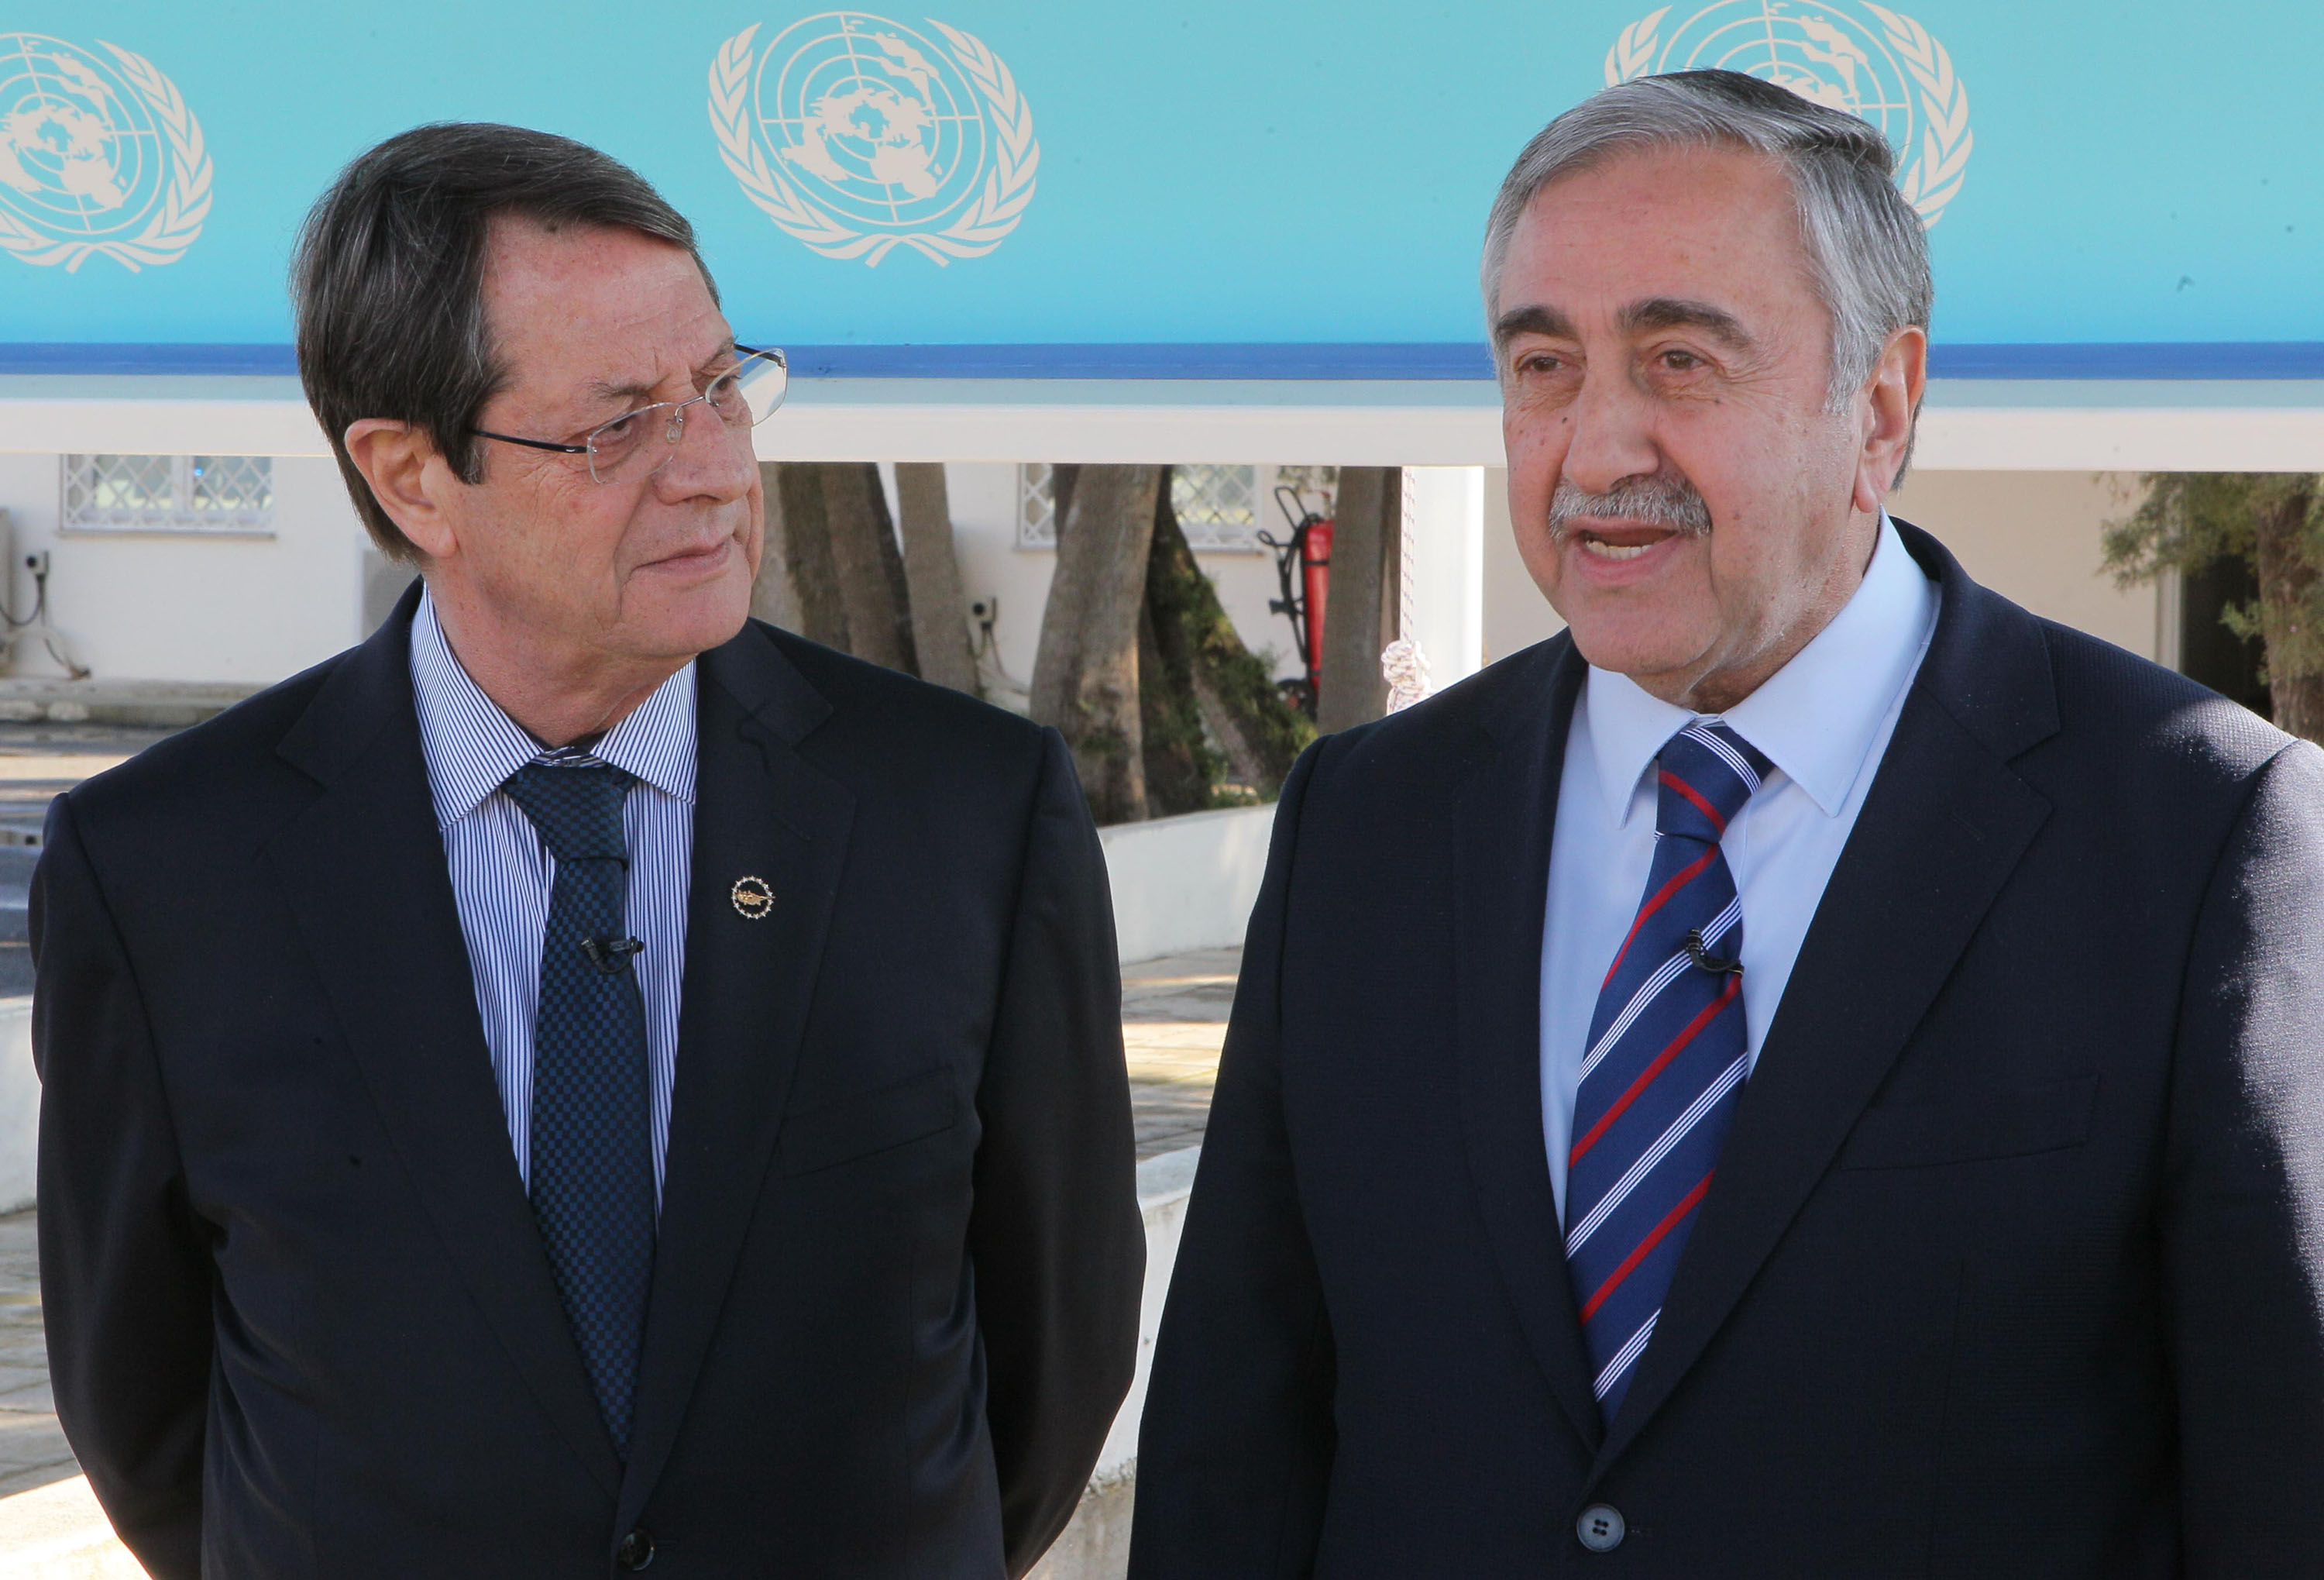 Ο Πρόεδρος της Δημοκρατίας κ. Νίκος Αναστασιάδης παρακάθεται, με τον ηγέτη της τουρκοκυπριακής κοινότητας κ. Μουσταφά Ακιντζί, σε συνομιλίες για το Κυπριακό.